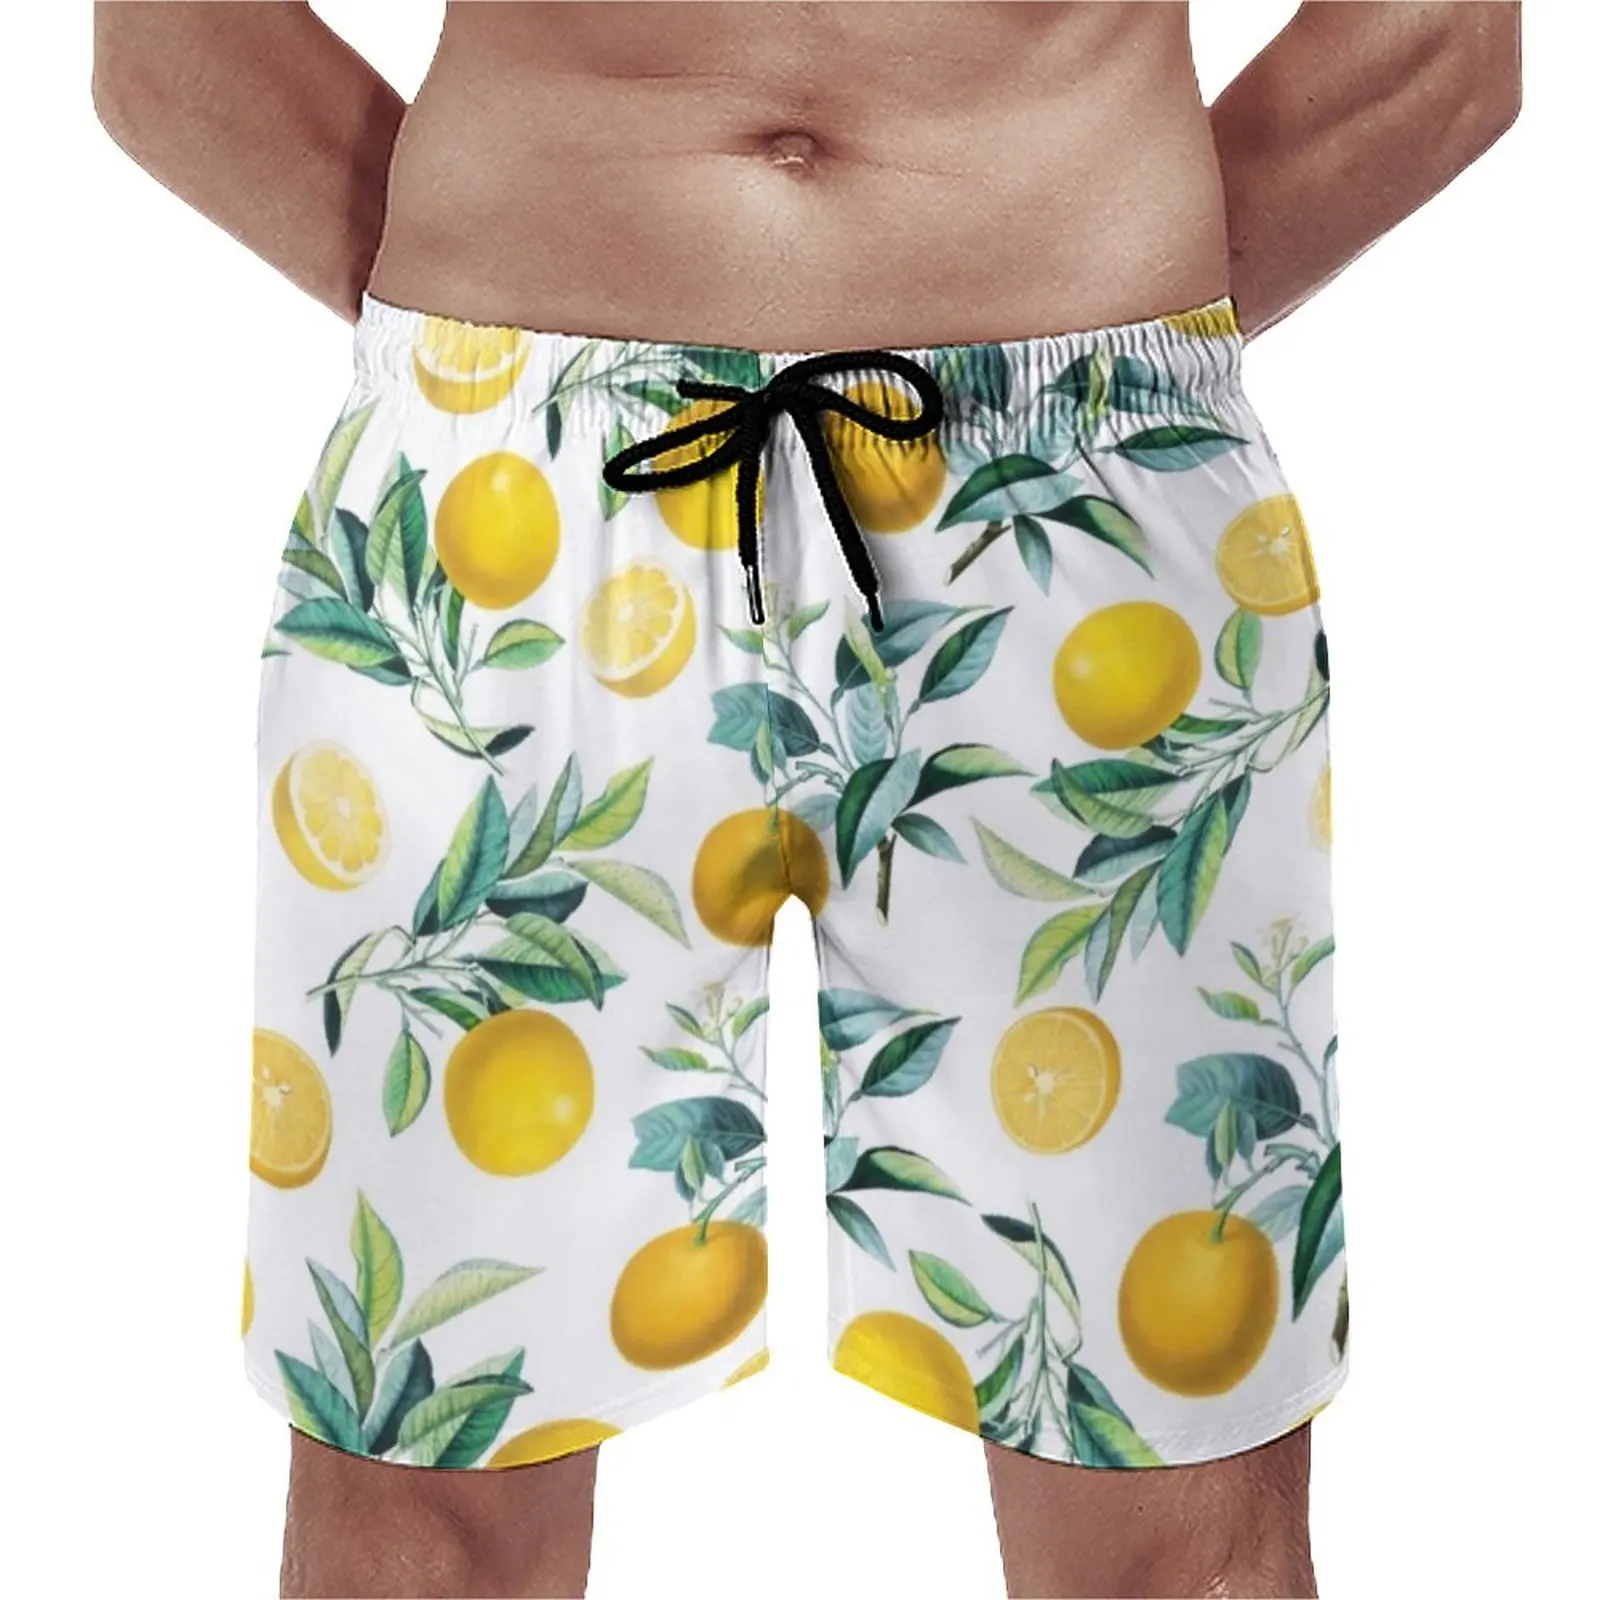 

Шорты для спортзала с принтом апельсинов, классические пляжные короткие штаны с принтом зеленых листьев и фруктов, быстросохнущие мужские плавки для бега, на заказ, лето